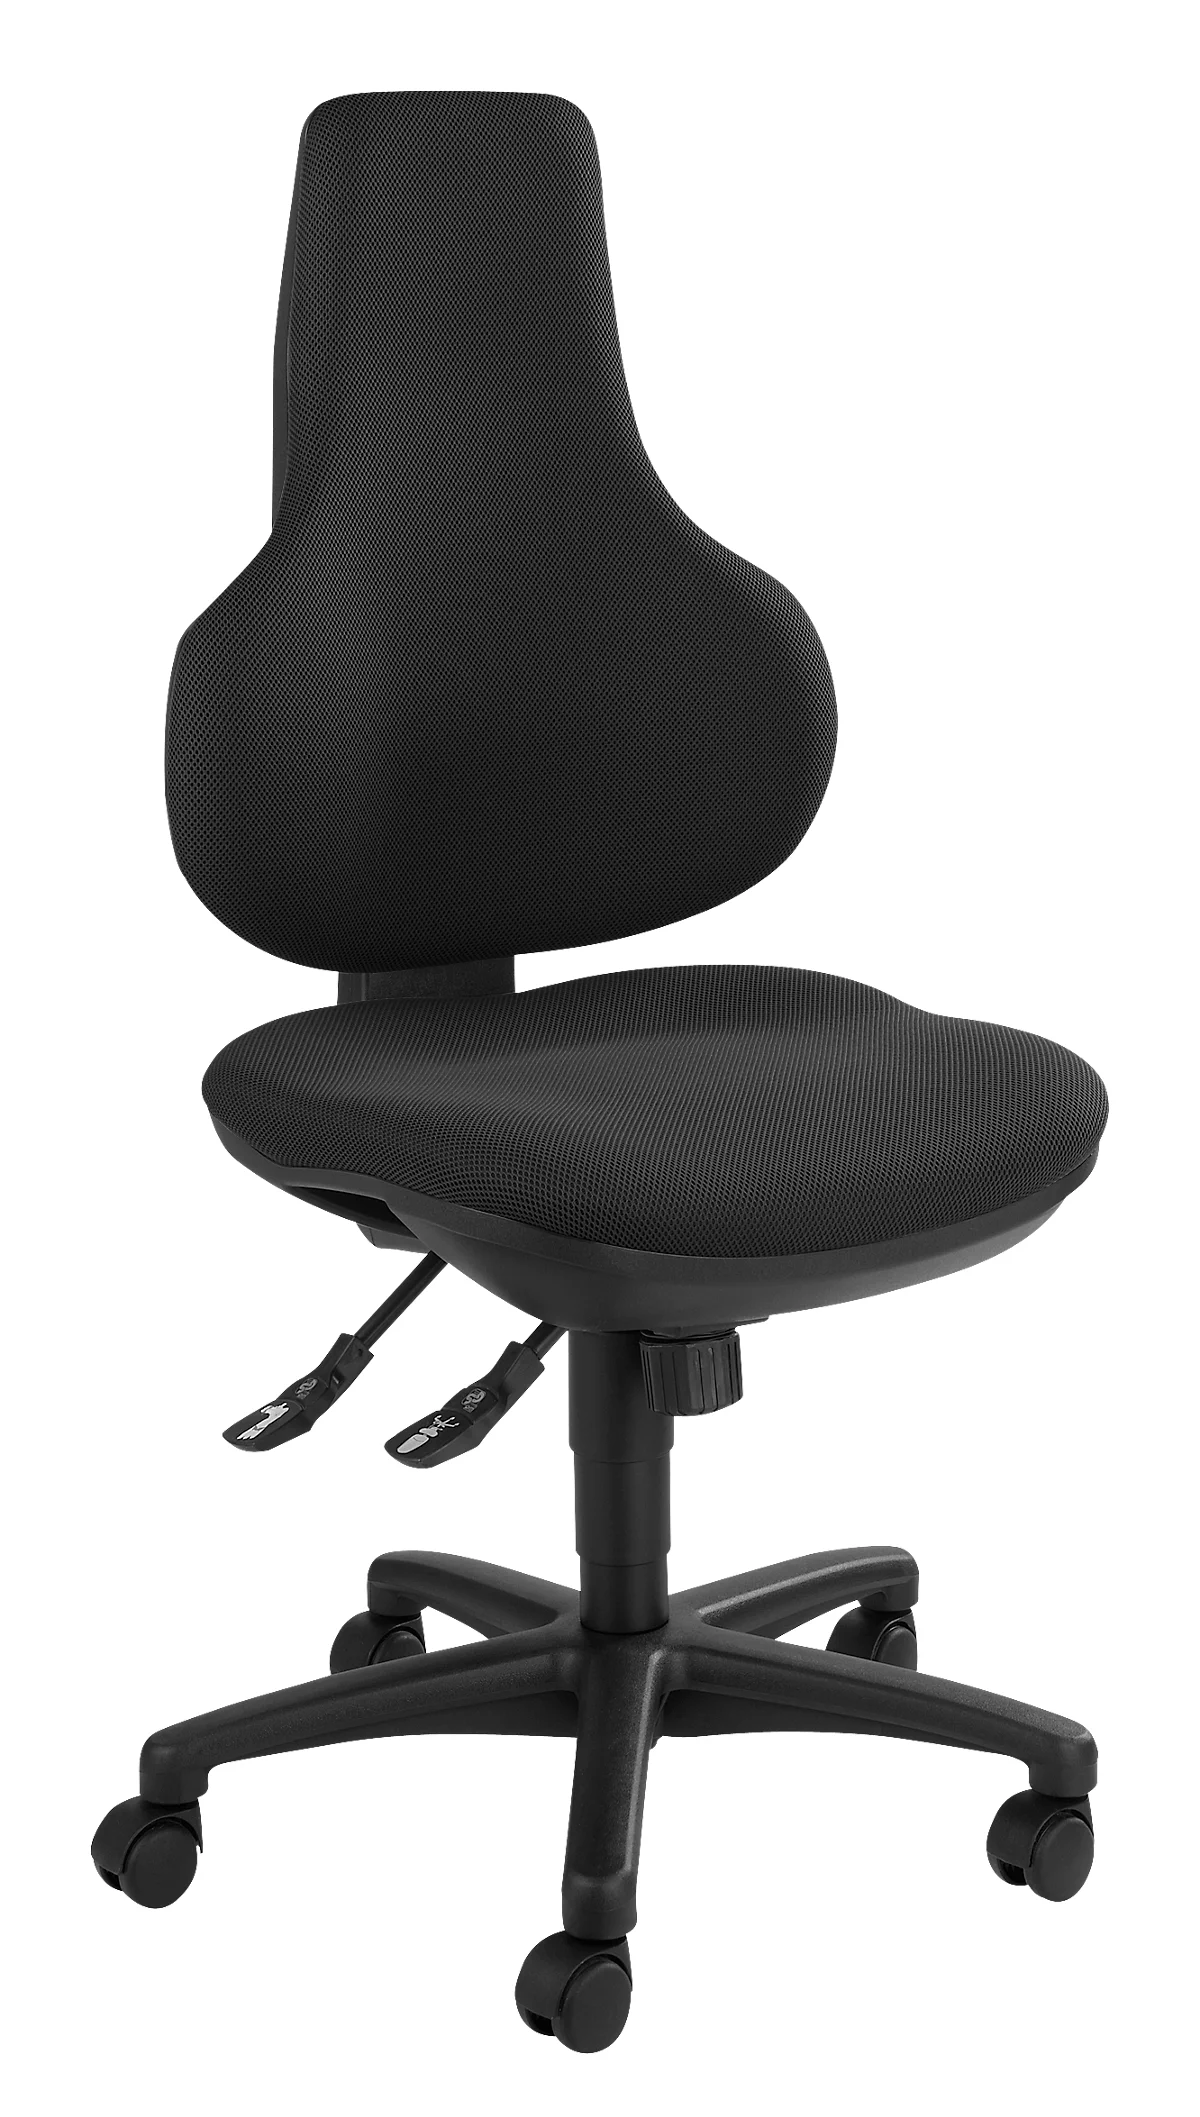 Silla de oficina Topstar ERGO POINT, mecanismo sincronizado, sin reposabrazos, asiento ergonómico especial, negro